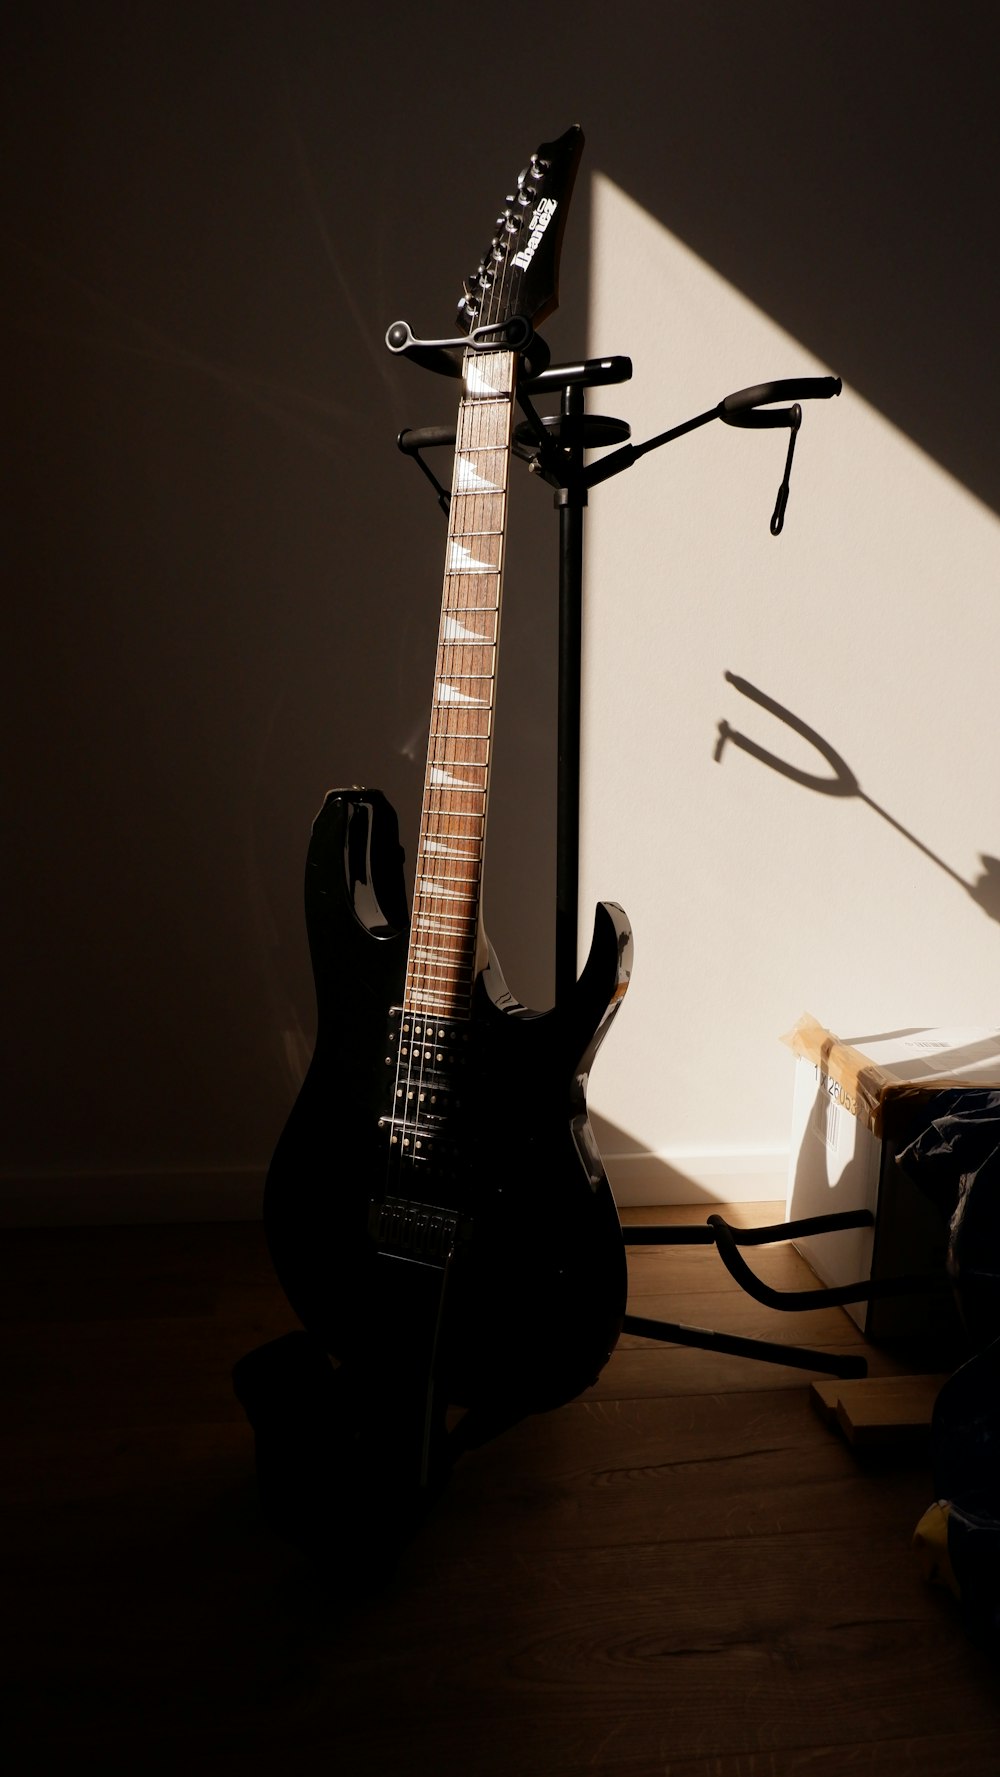 Una guitarra está sentada al lado de un soporte de guitarra